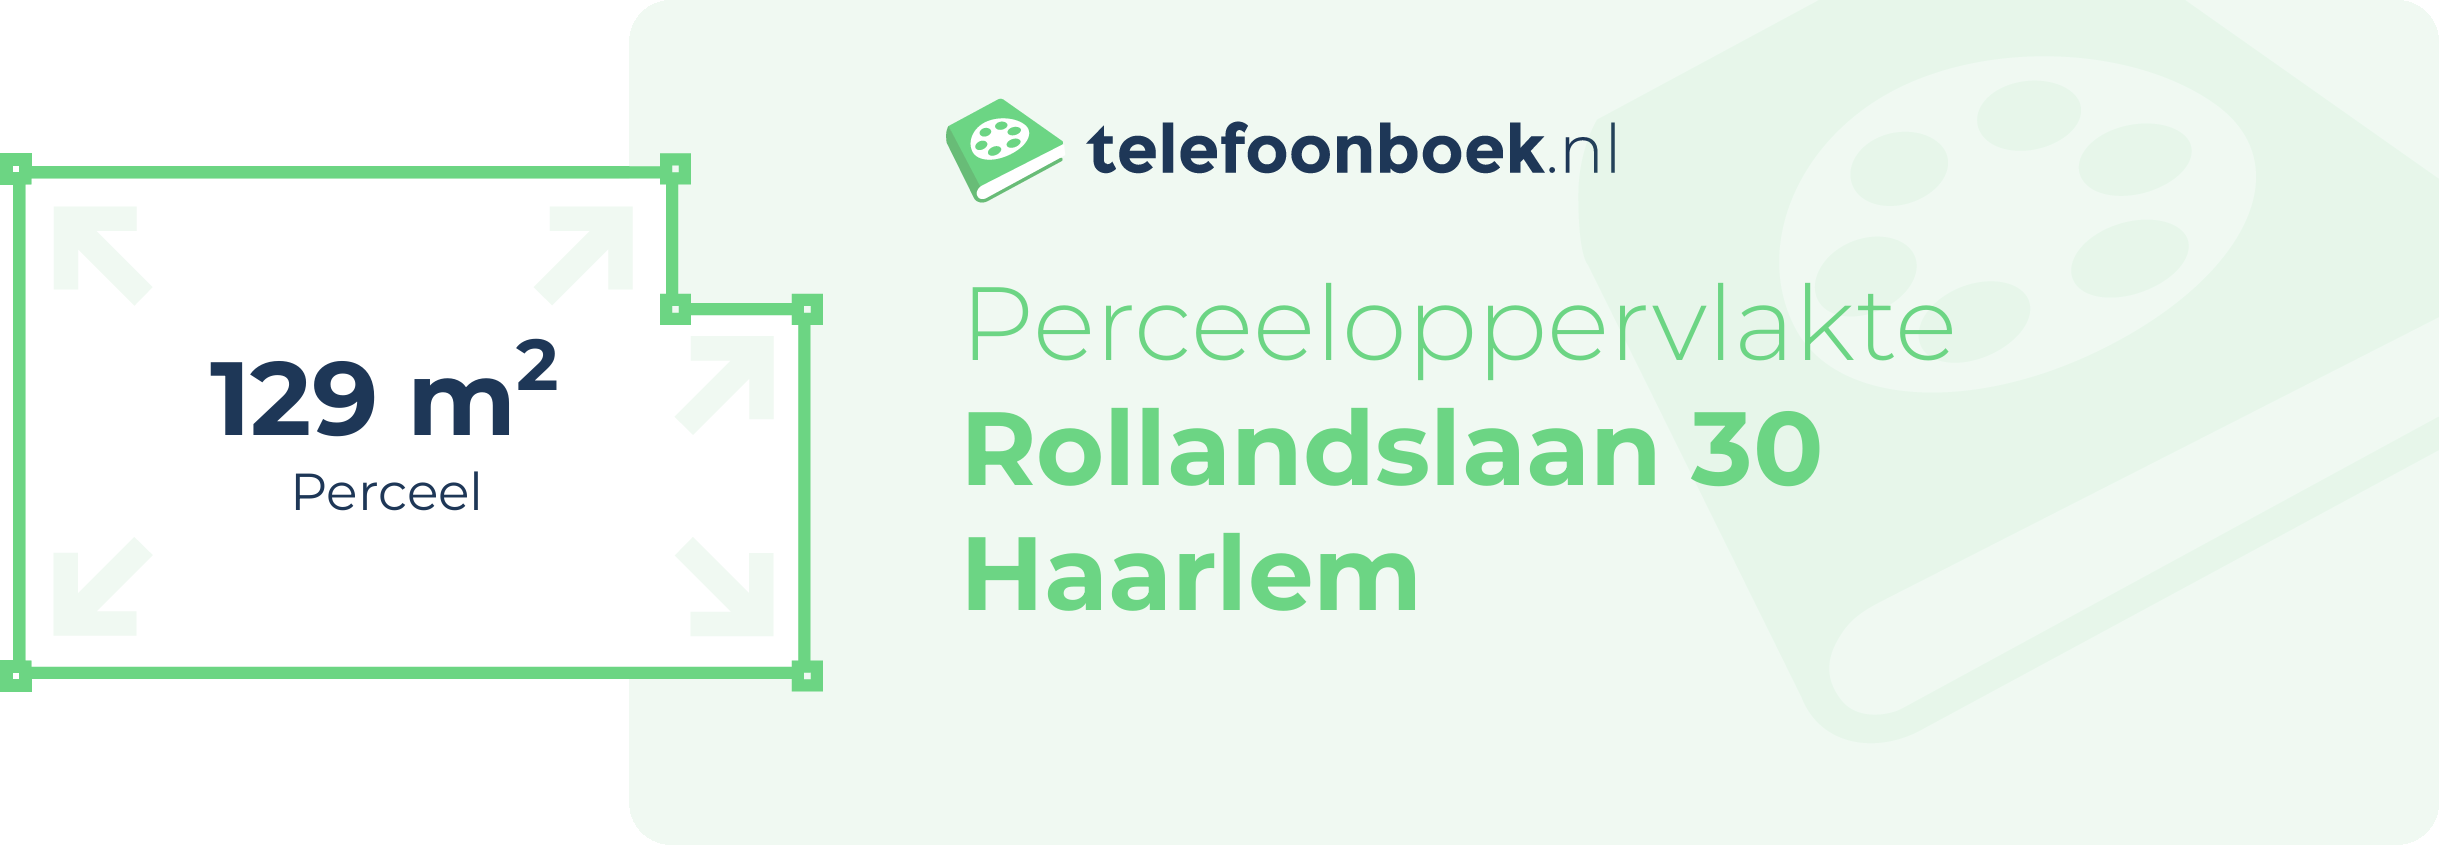 Perceeloppervlakte Rollandslaan 30 Haarlem